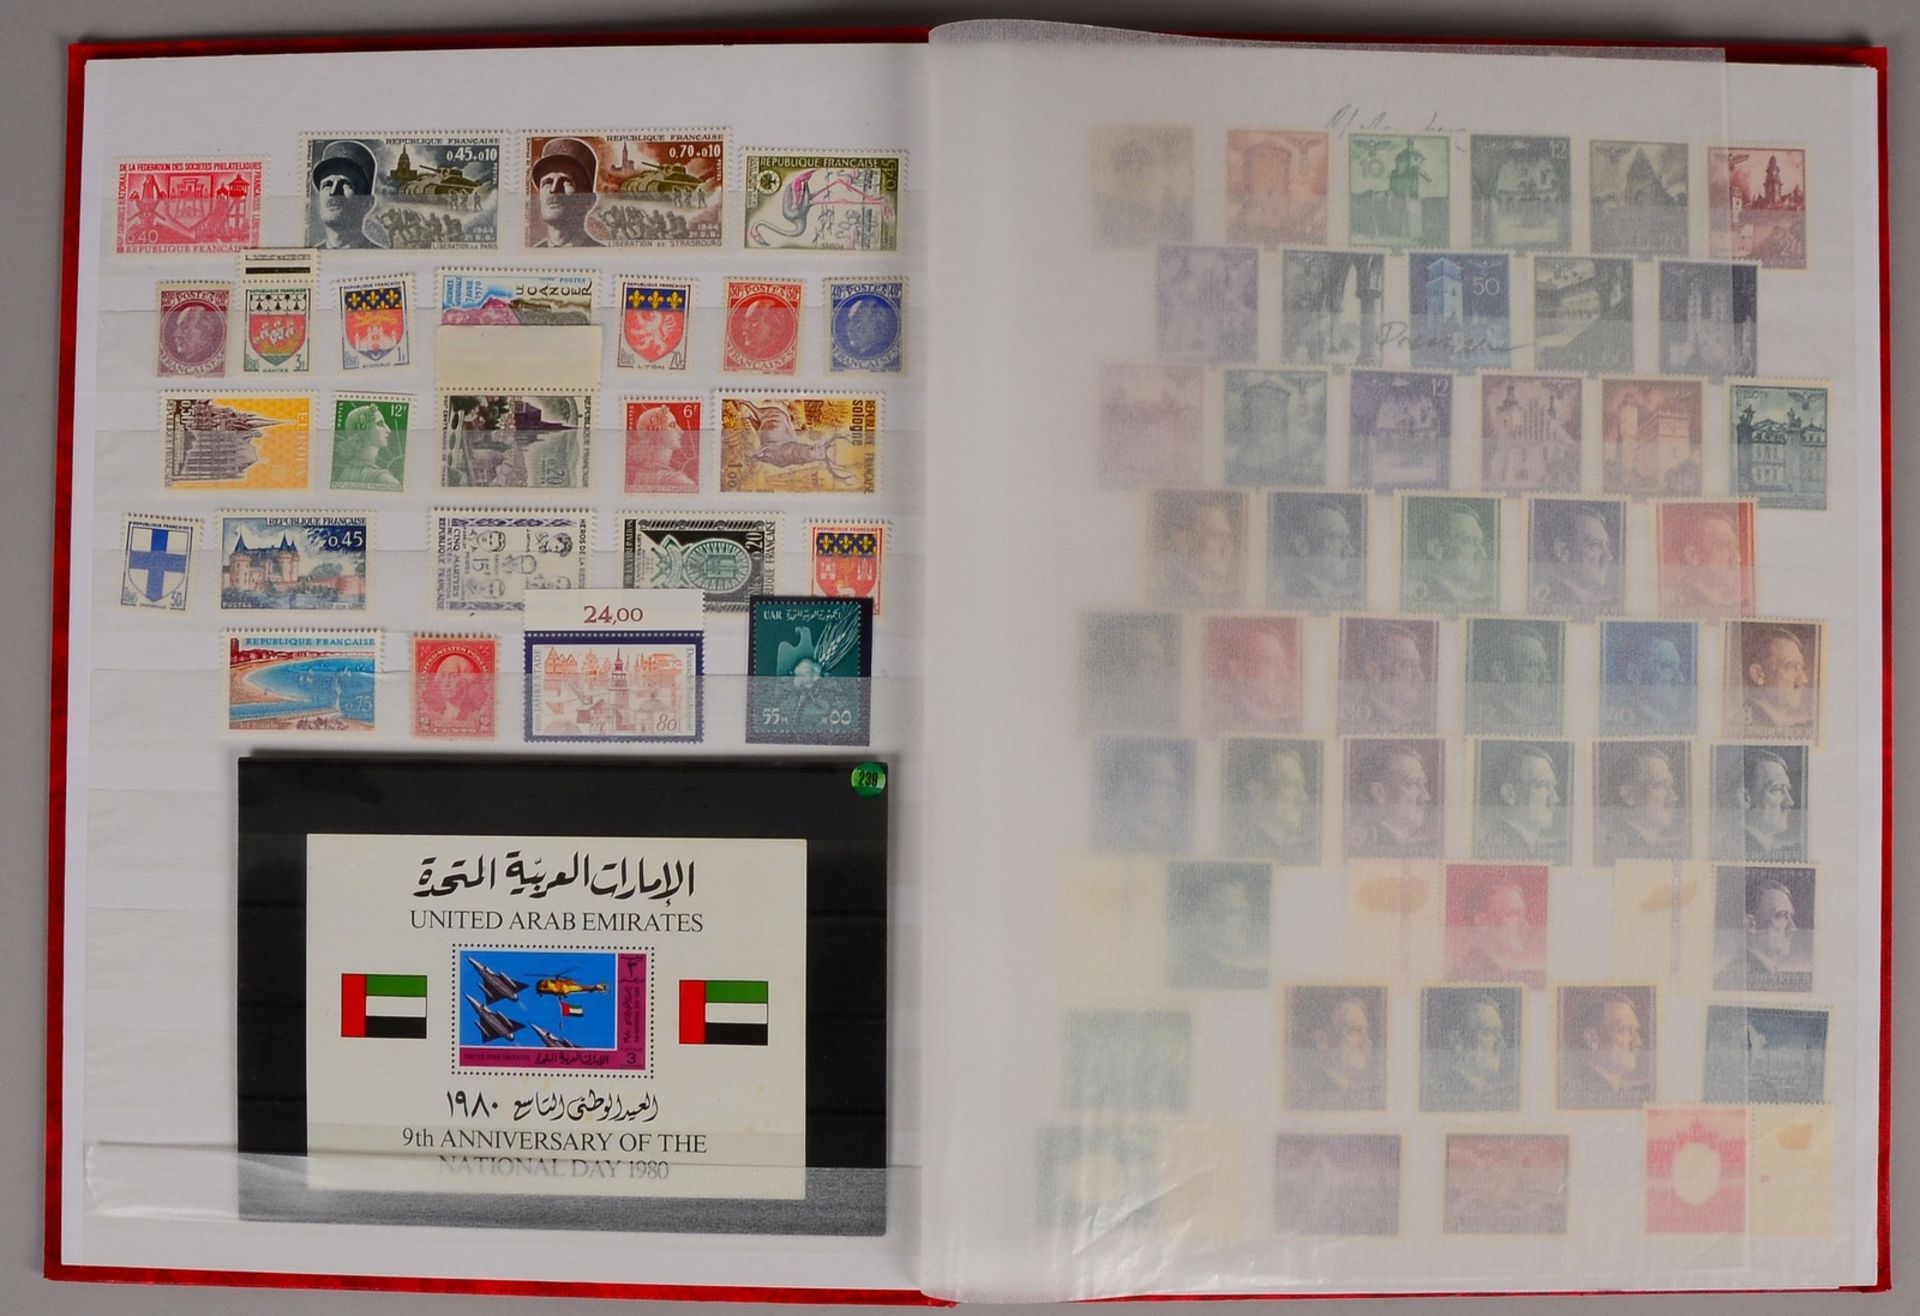 Briefmarken, Diverses, ca. 1920 - 2000: überw. postfr.; mit Block 'United Arab Emirates 1980' - Bild 3 aus 3